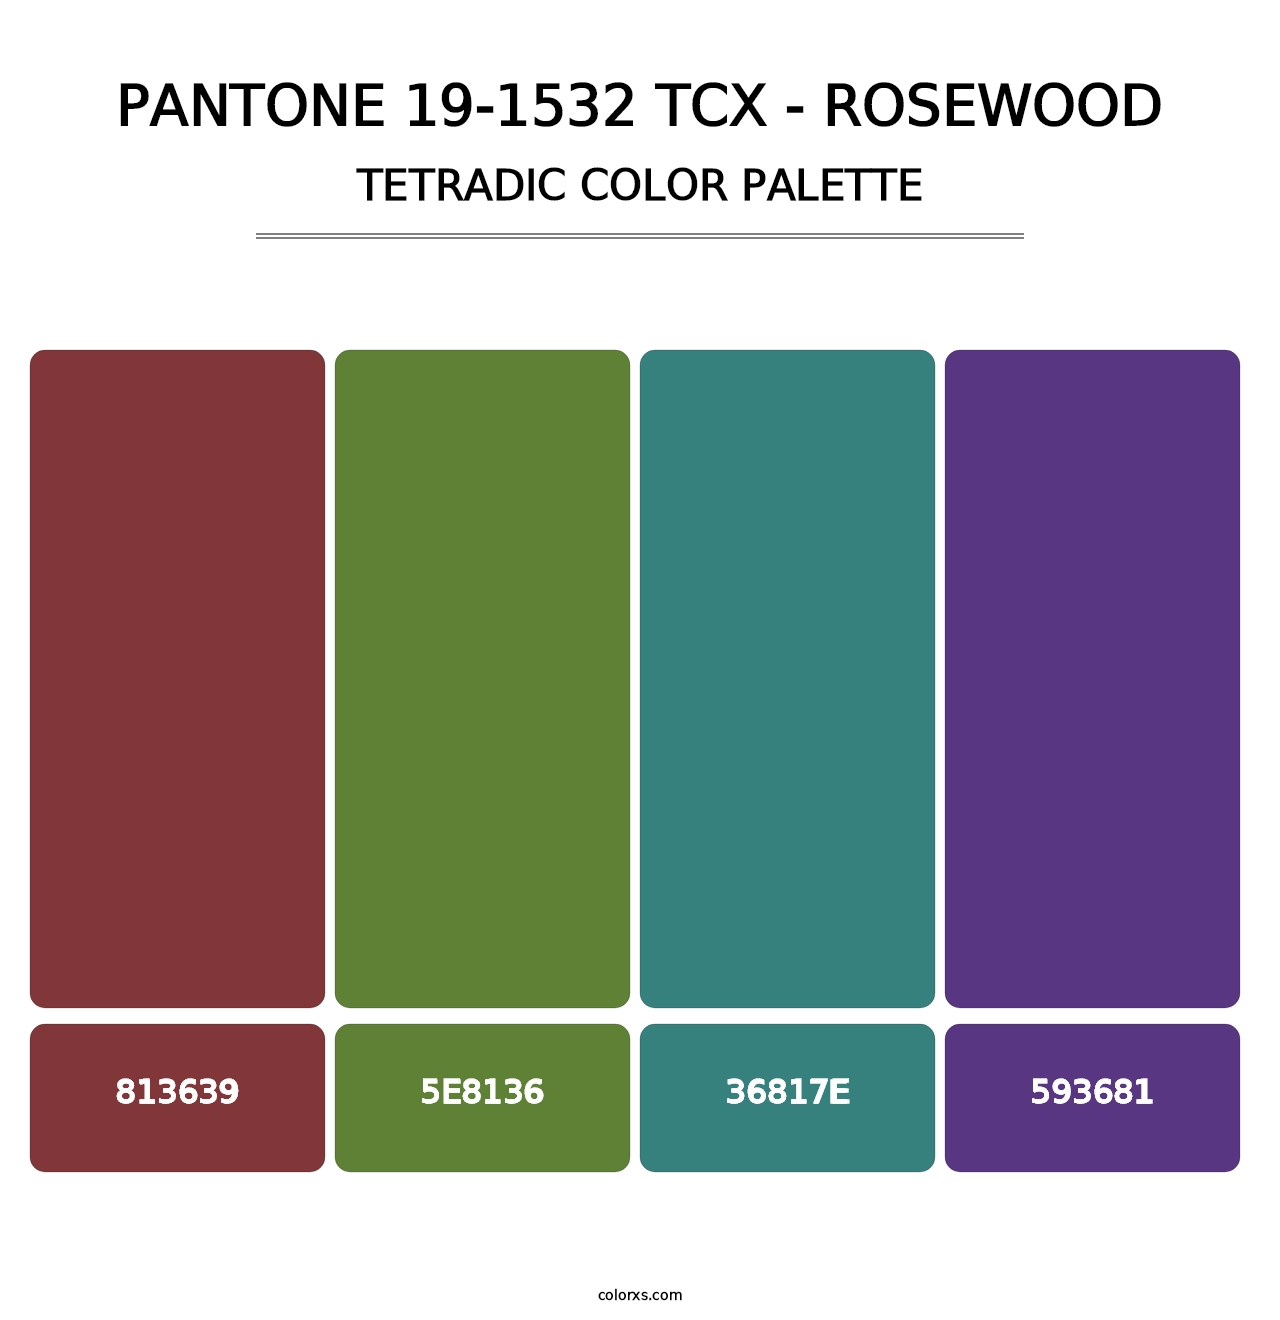 PANTONE 19-1532 TCX - Rosewood - Tetradic Color Palette